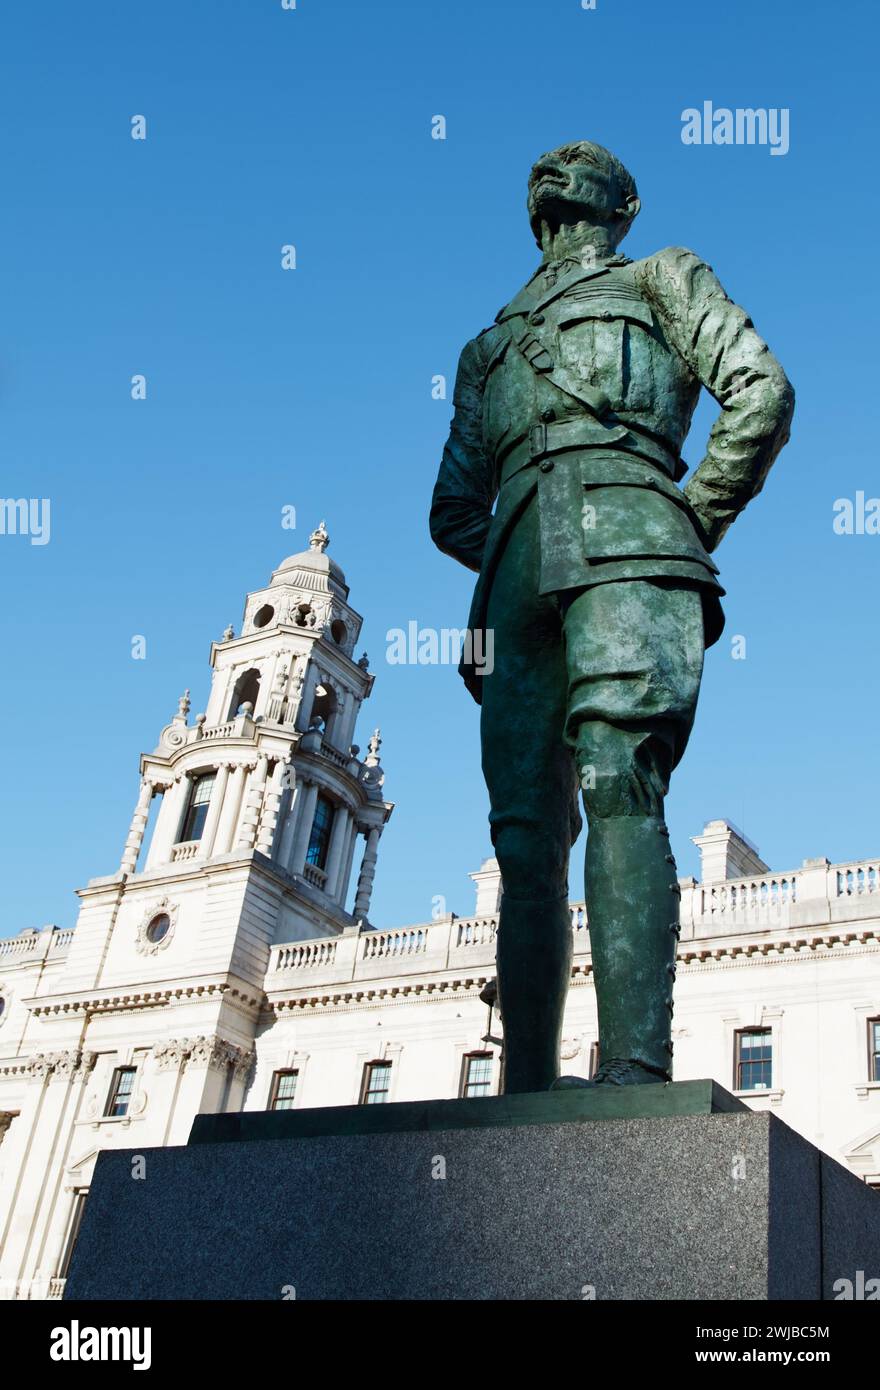 Statua di bronzo a grandezza naturale di Jan Smuts in uniforme militare del feldmaresciallo su Un piedistallo di granito di Jacob Epstein sul lato nord di Parliament Square, Foto Stock